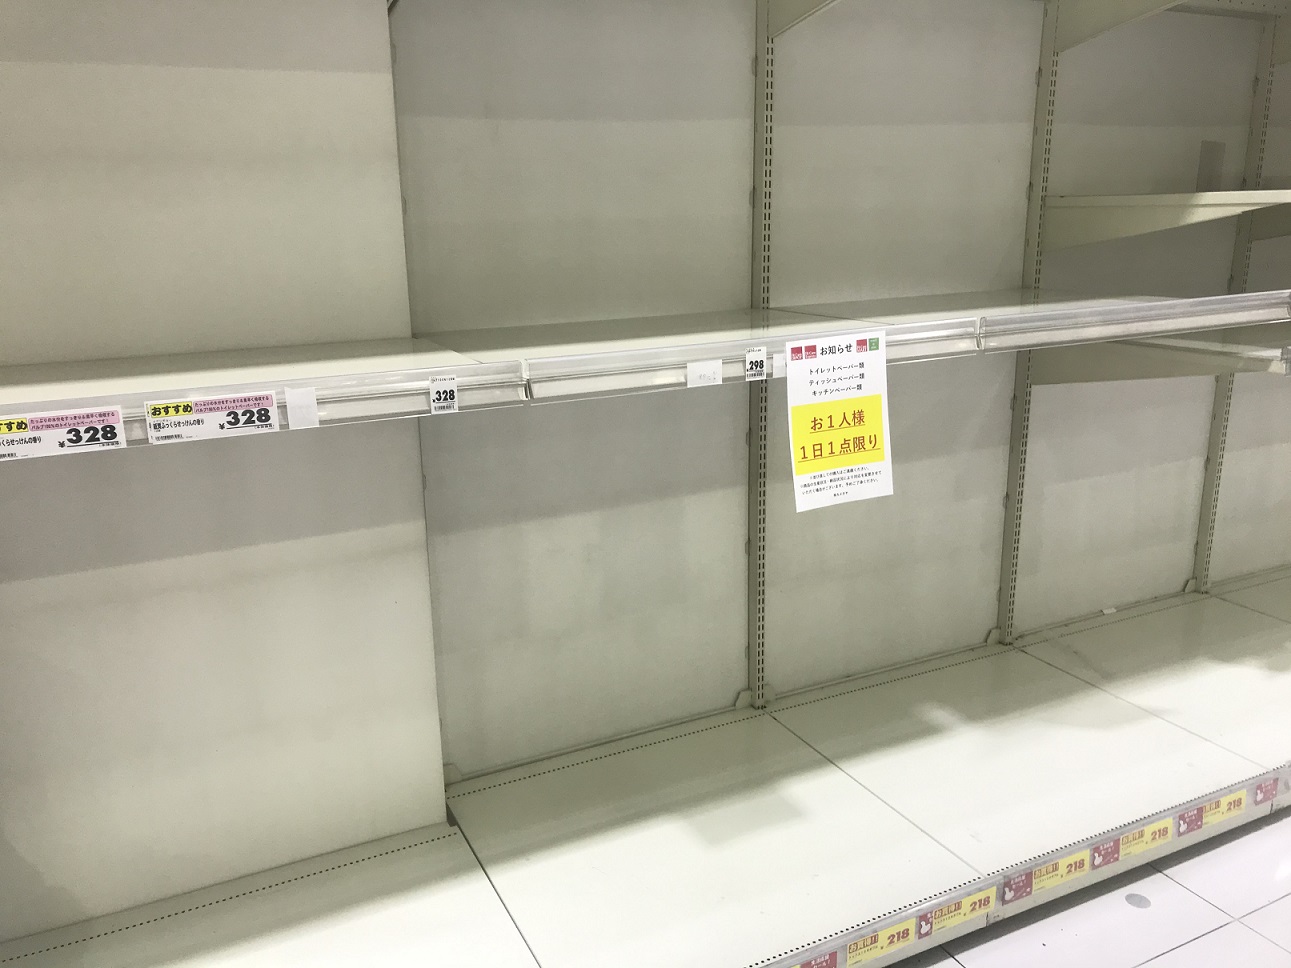 Coronamaßnahmen in Japan: Leeres Supermarktregal und Auskunft zur Rationalisierung bestimmter Waren